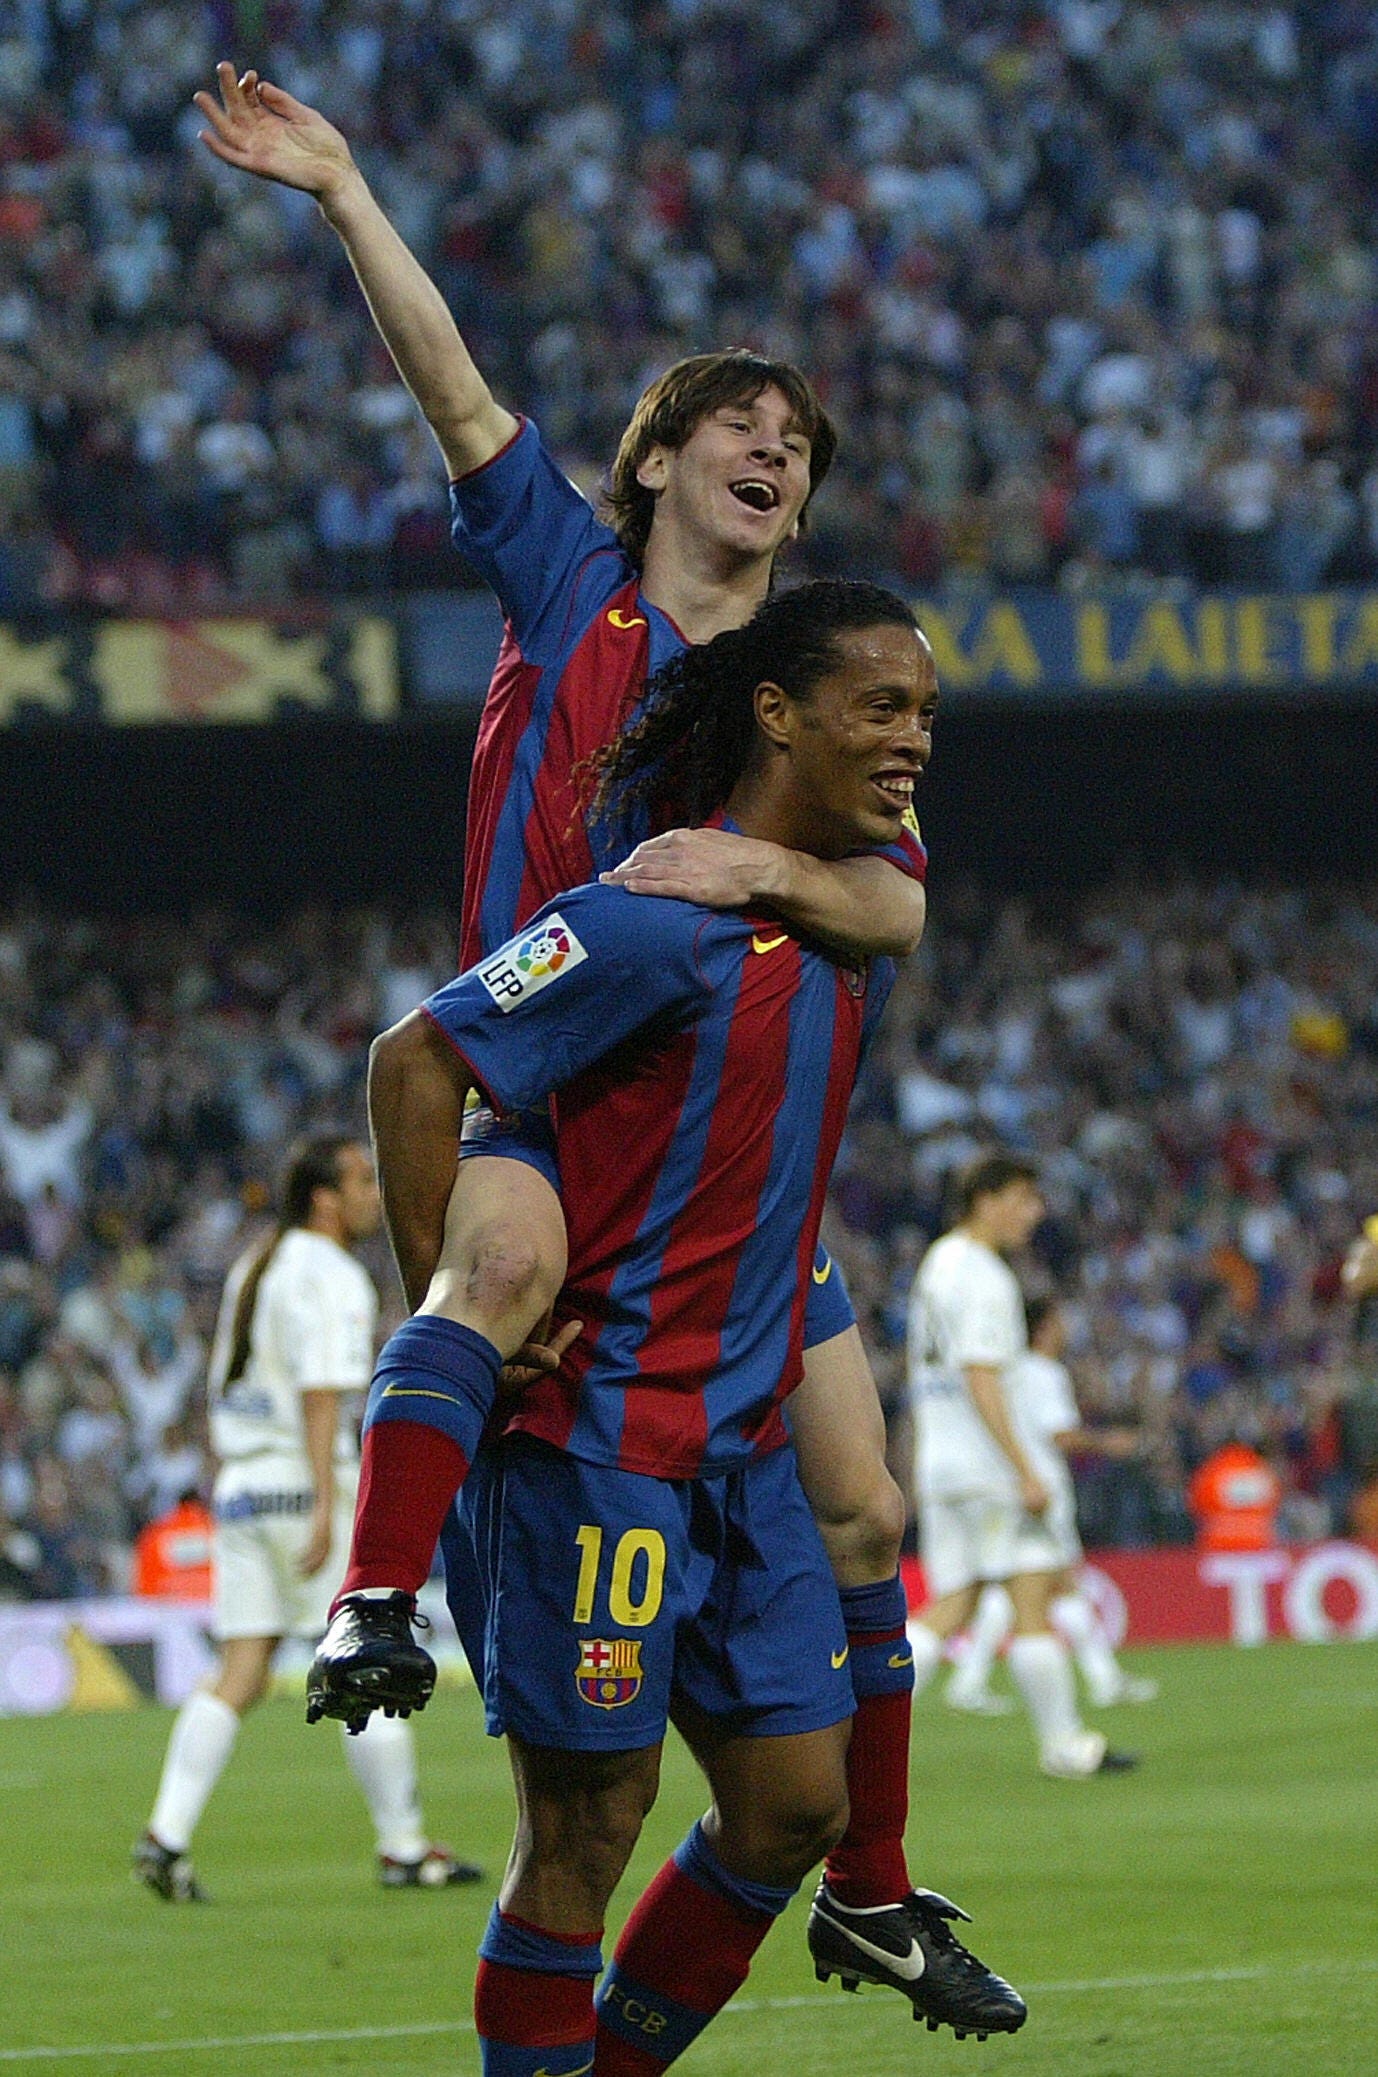 Sự kết hợp hoàn hảo giữa hai cầu thủ bóng đá huyền thoại, Ronaldinho và Messi, được thể hiện rõ ràng trong hình ảnh này. Bức ảnh đầy cảm xúc sẽ mang đến cho bạn sự xúc động và cảm giác như đang thấy hai anh chàng này bên nhau trên sân.